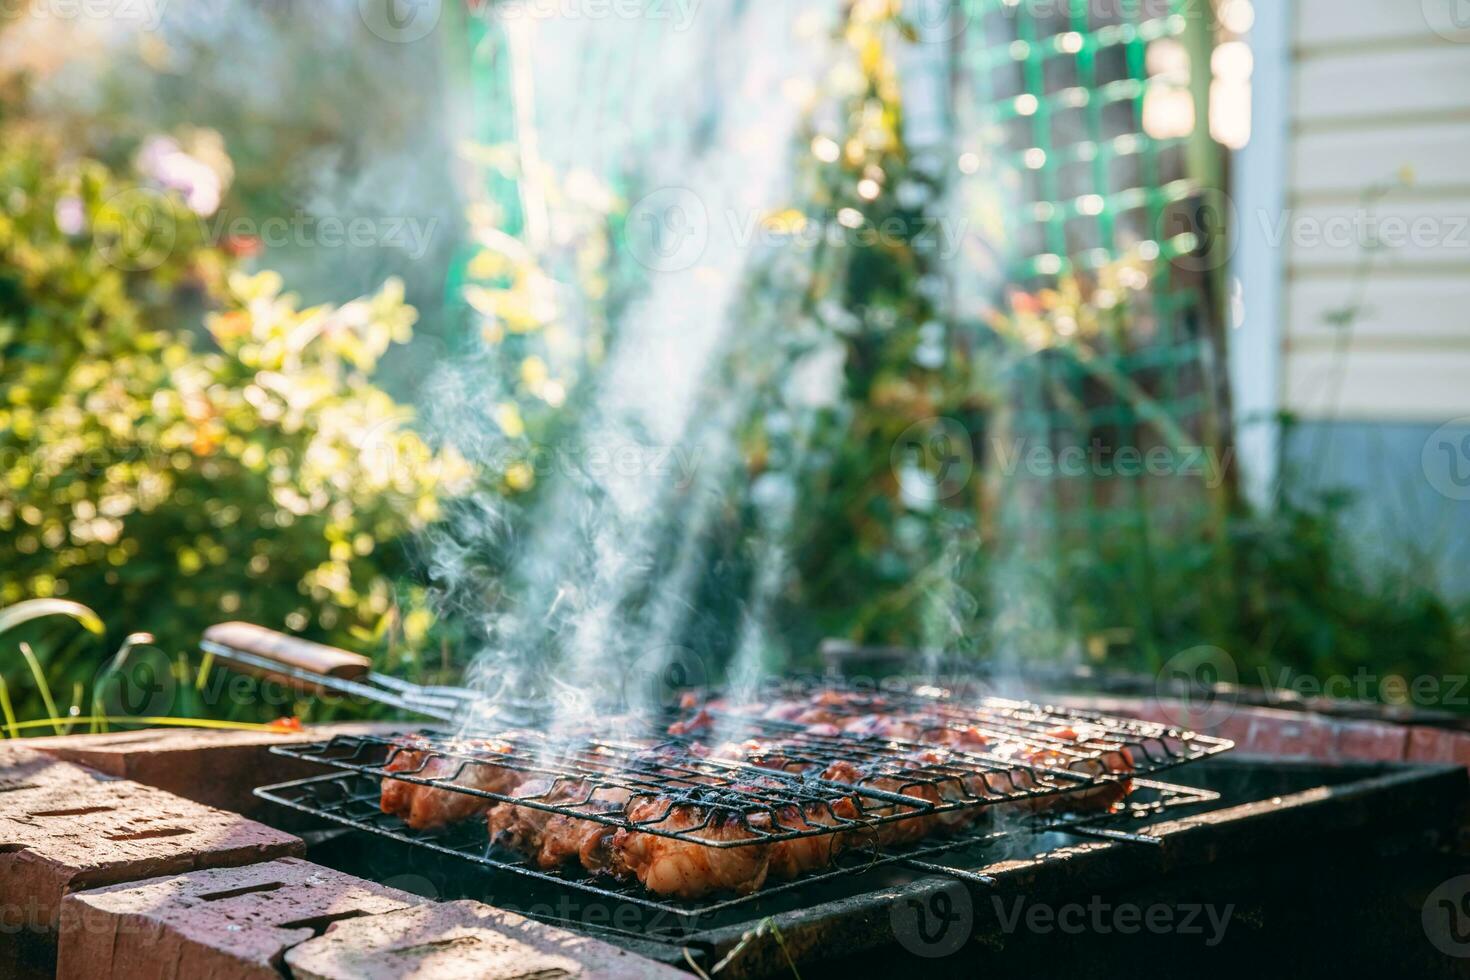 dourado Castanho grelhado frango carne é cozinhou em a grade ao ar livre foto